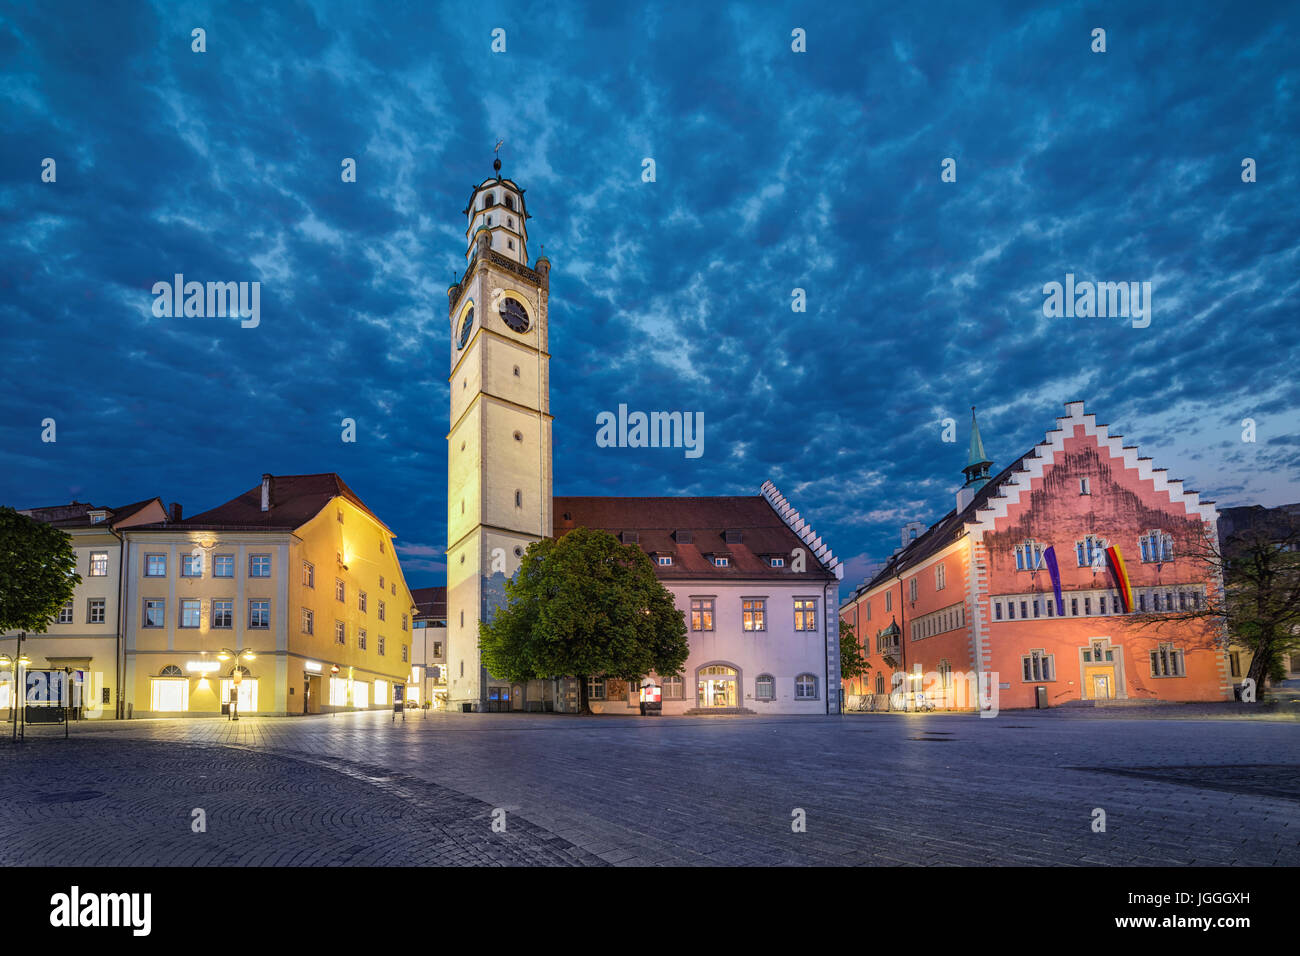 Sites historiques de Ravensburg : Blaserturm (la tour), le trompettiste Waaghaus (maison) et l'hôtel de ville (Rathaus) situé sur la place Marienplatz Banque D'Images